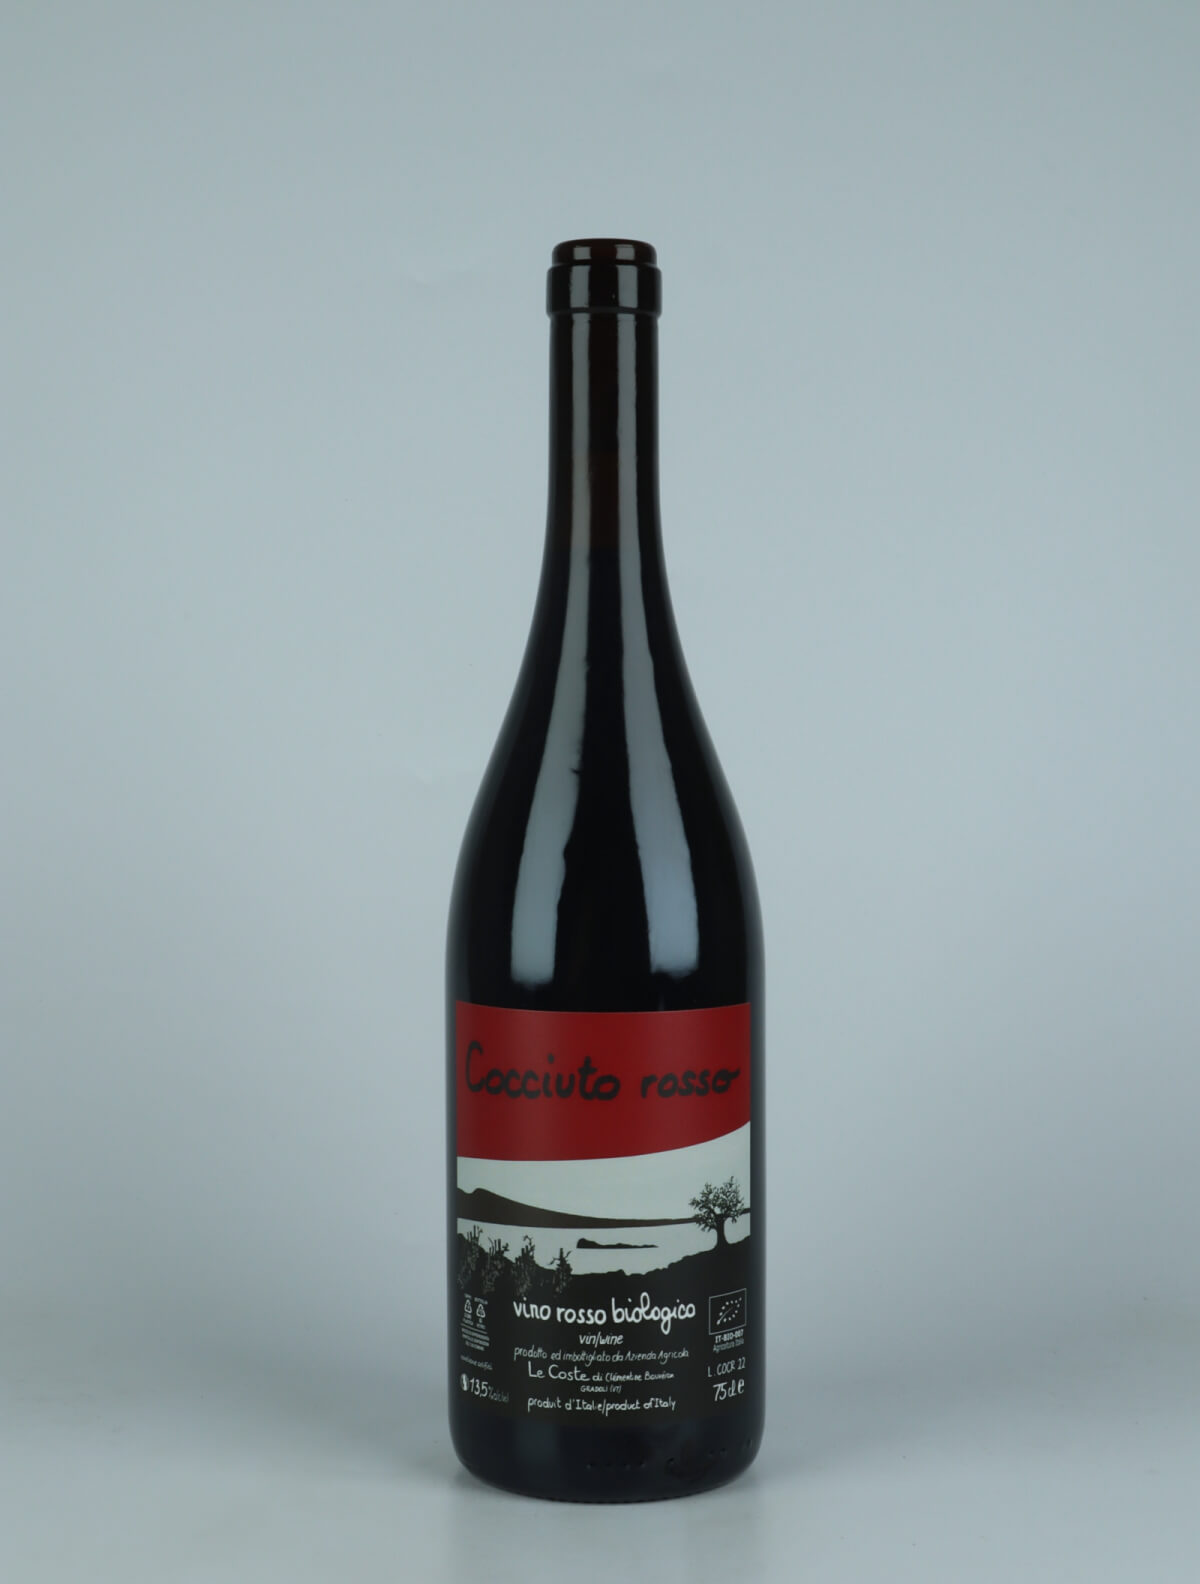 A bottle 2022 Cocciuto Rosso Red wine from Le Coste, Lazio in Italy